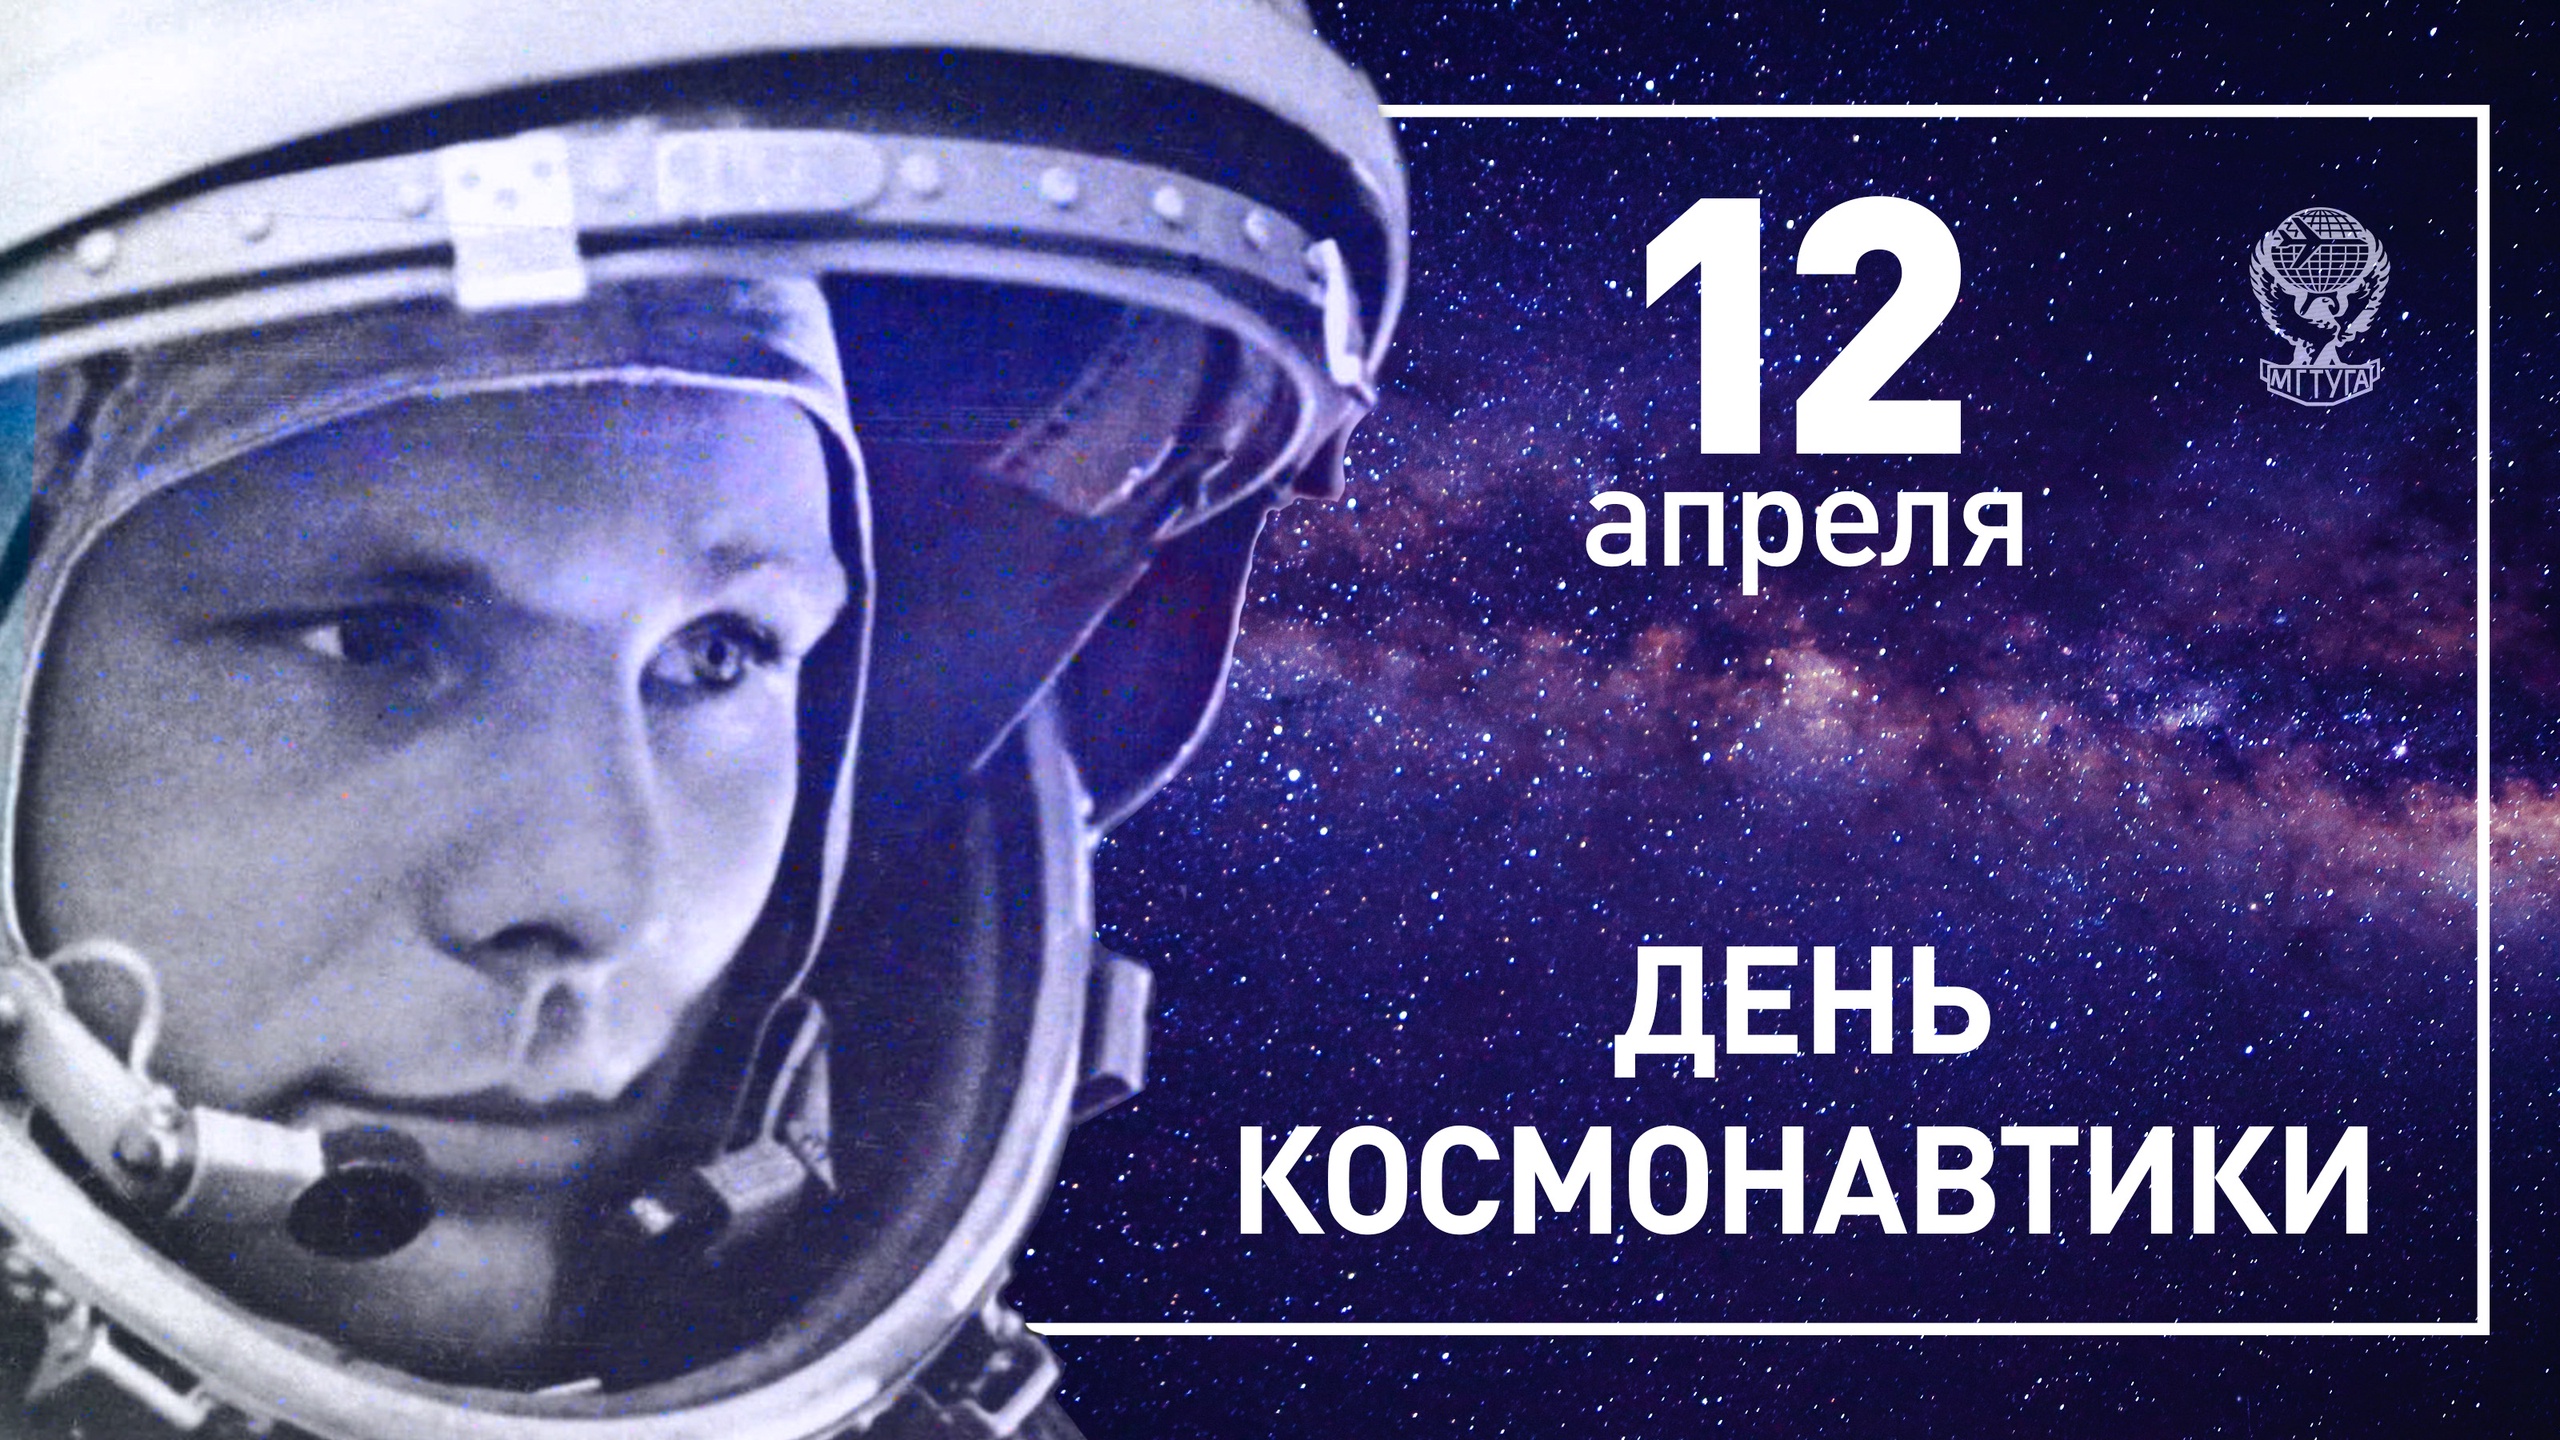 1 апреля день космонавтики. С днем космонавтики поздравление. Всемирный день авиации и космонавтики. С днем космонавтики открытки.